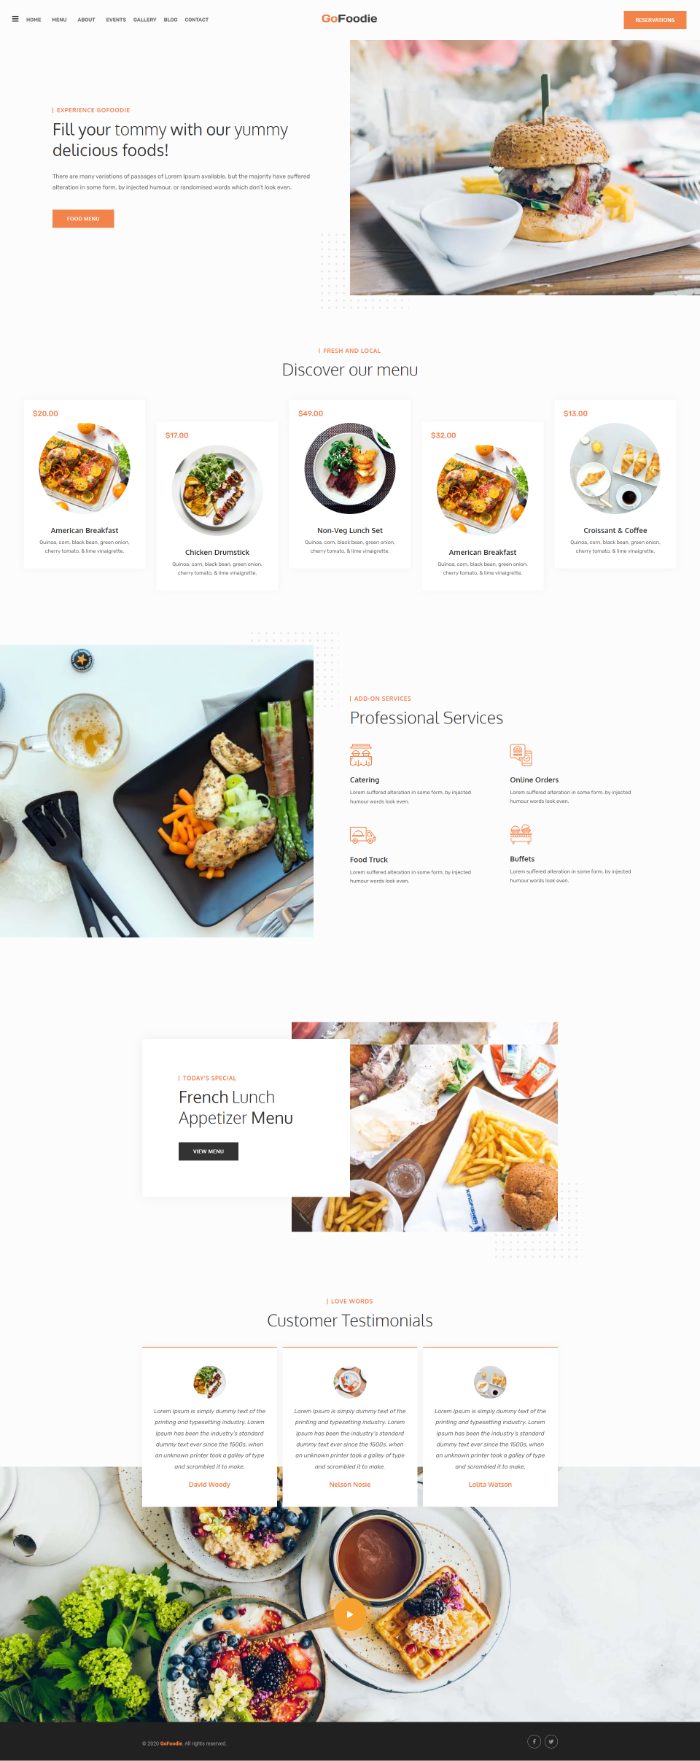 Mẫu website dịch vụ nhà hàng - Gofoodie